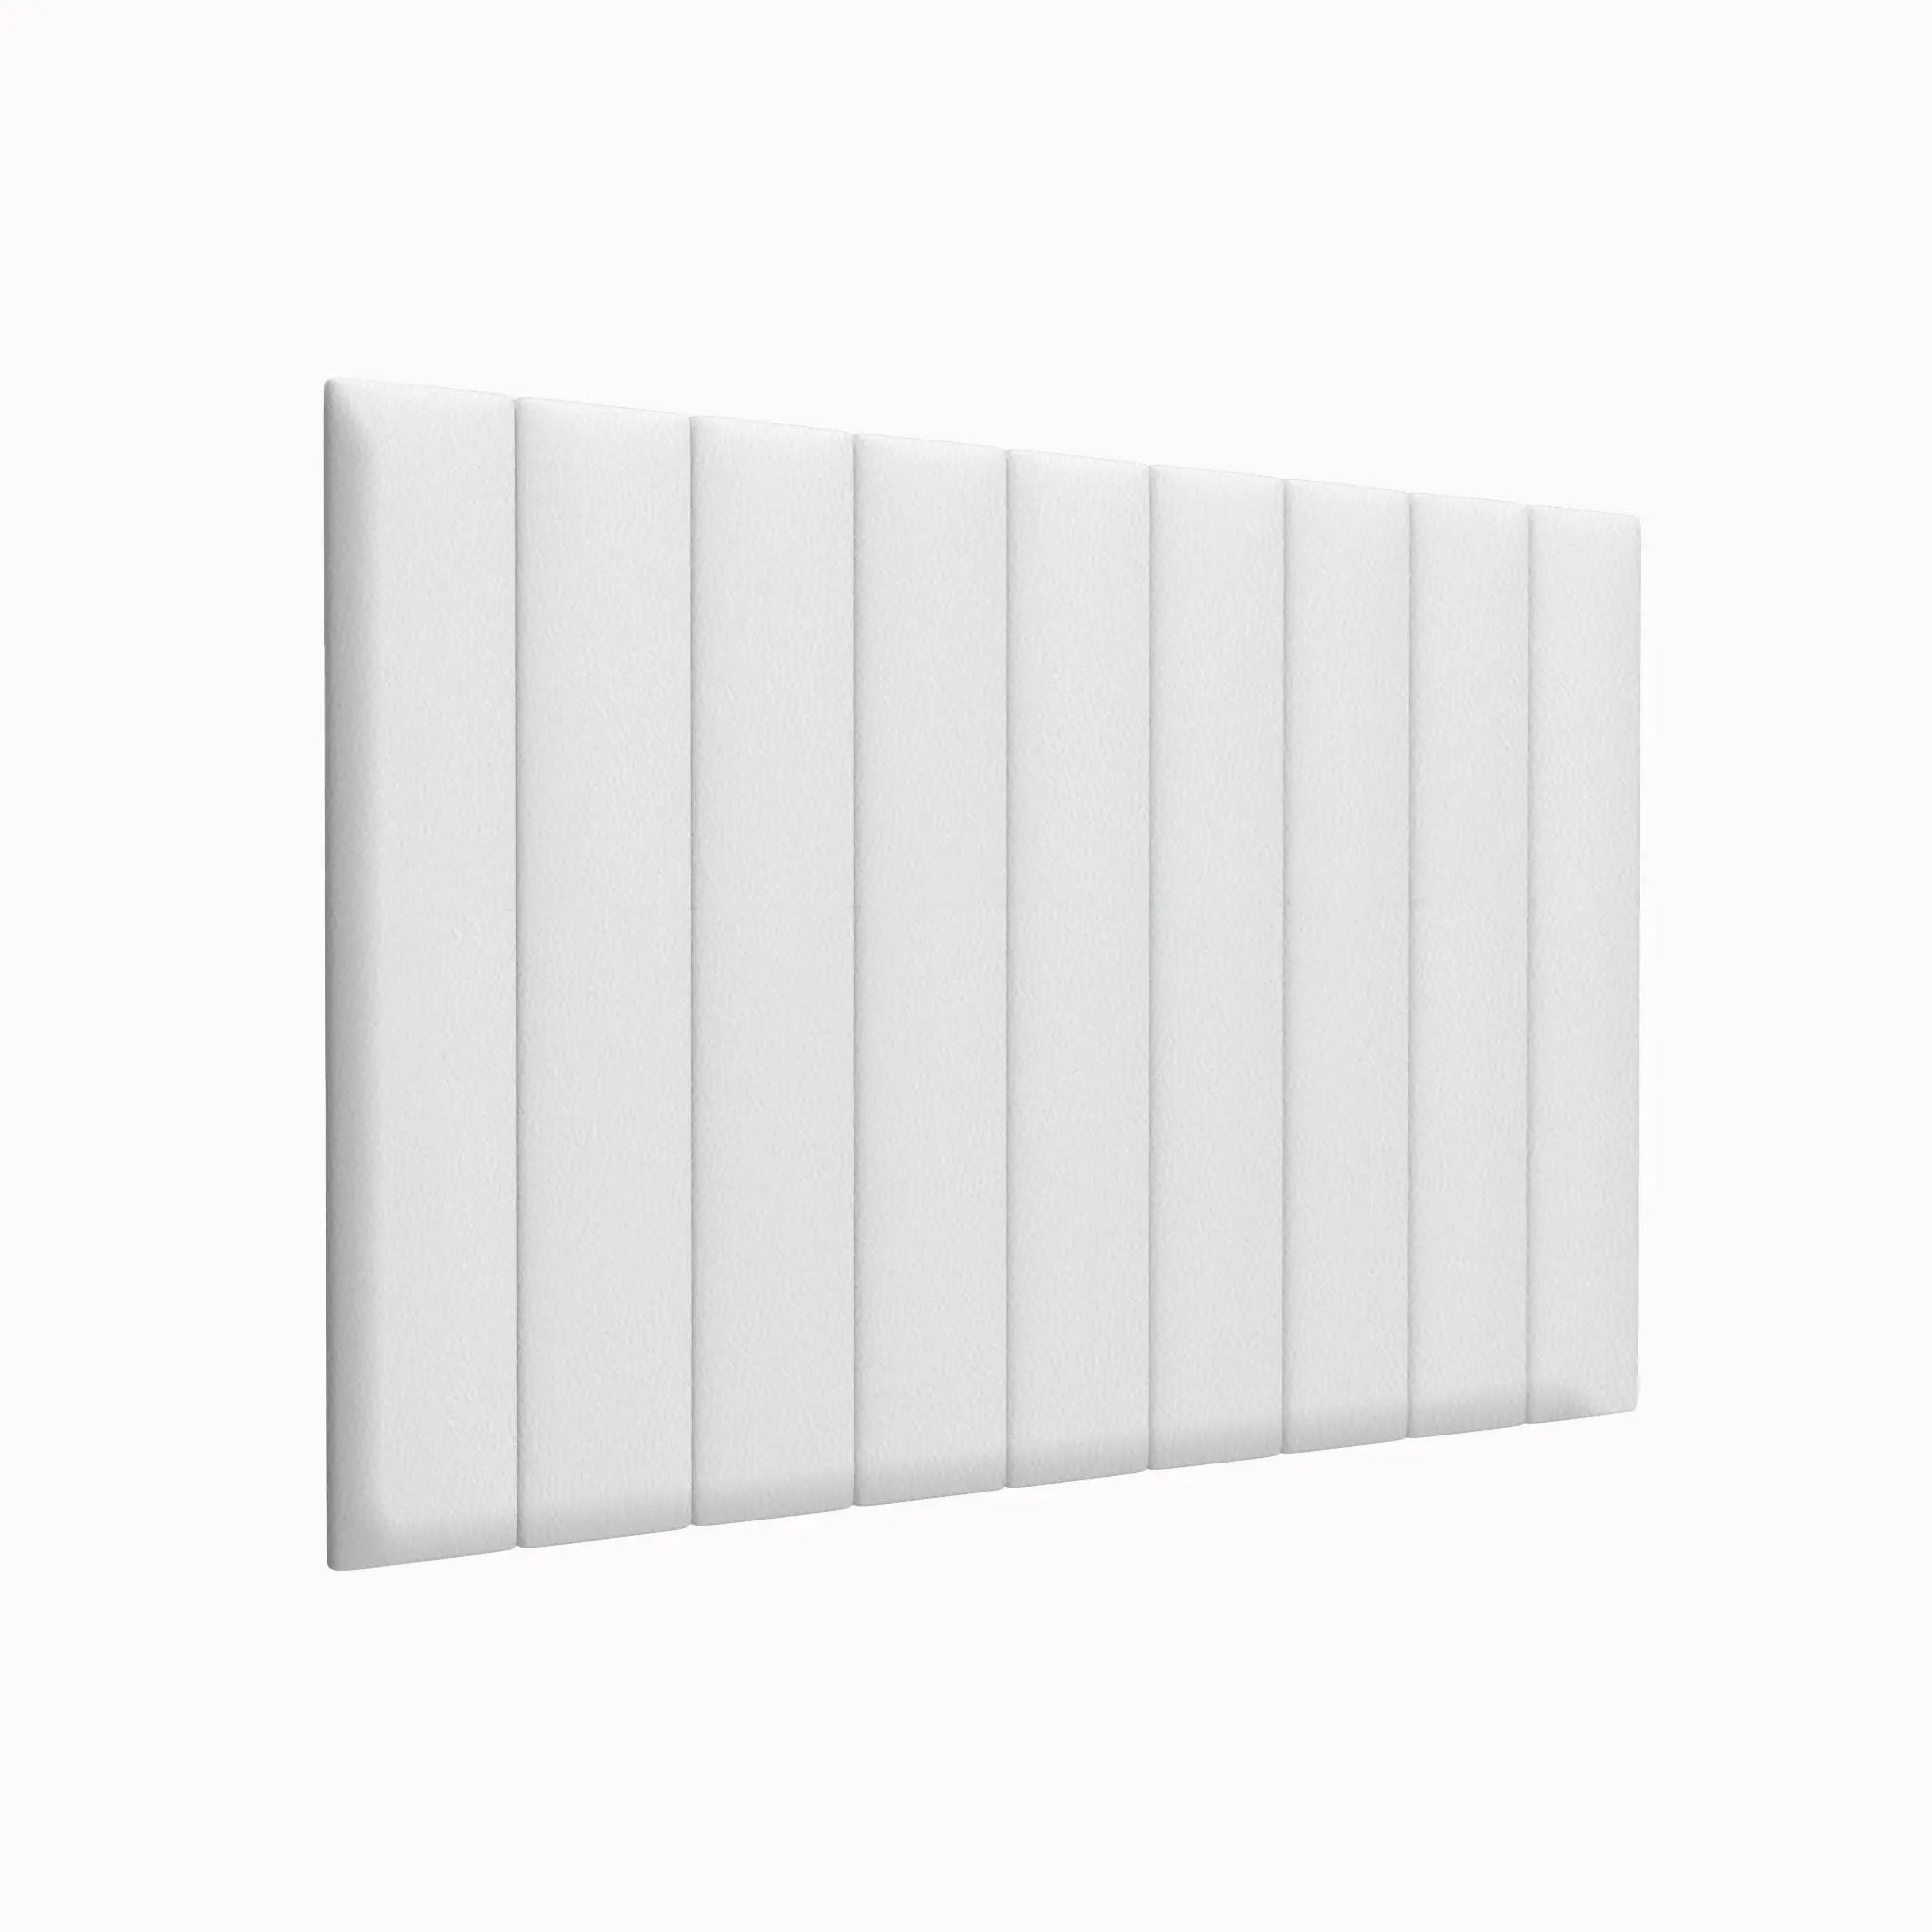 Стеновая панель Eco Leather White 15х90 см 2 шт.